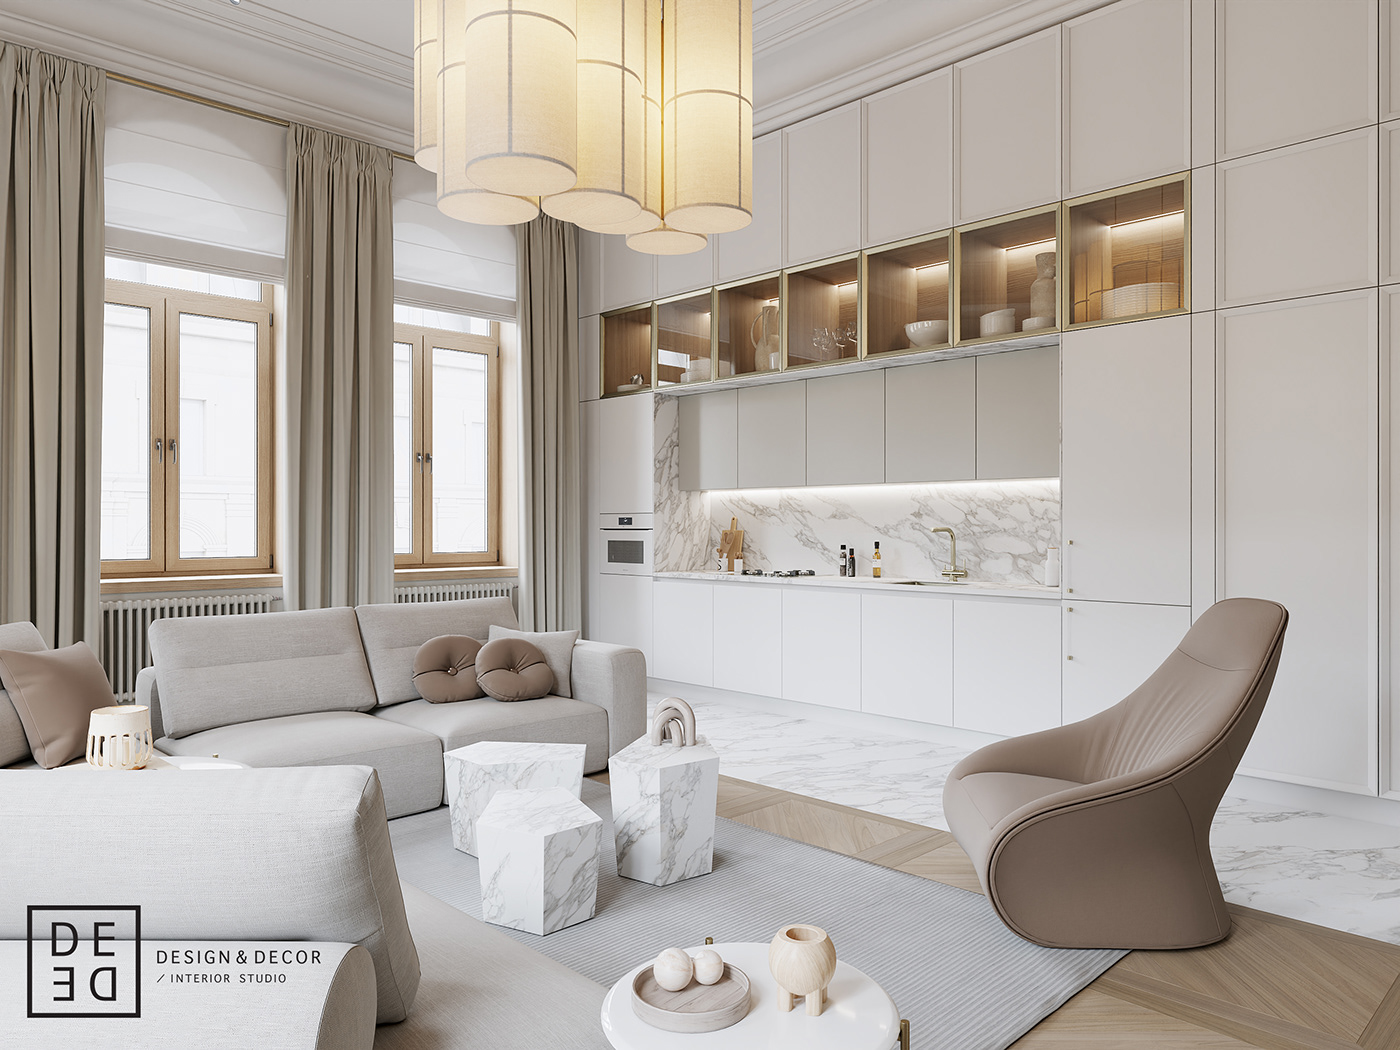 3dsmax corona render  designer designing designs eclectic Interior interiordesign interiors